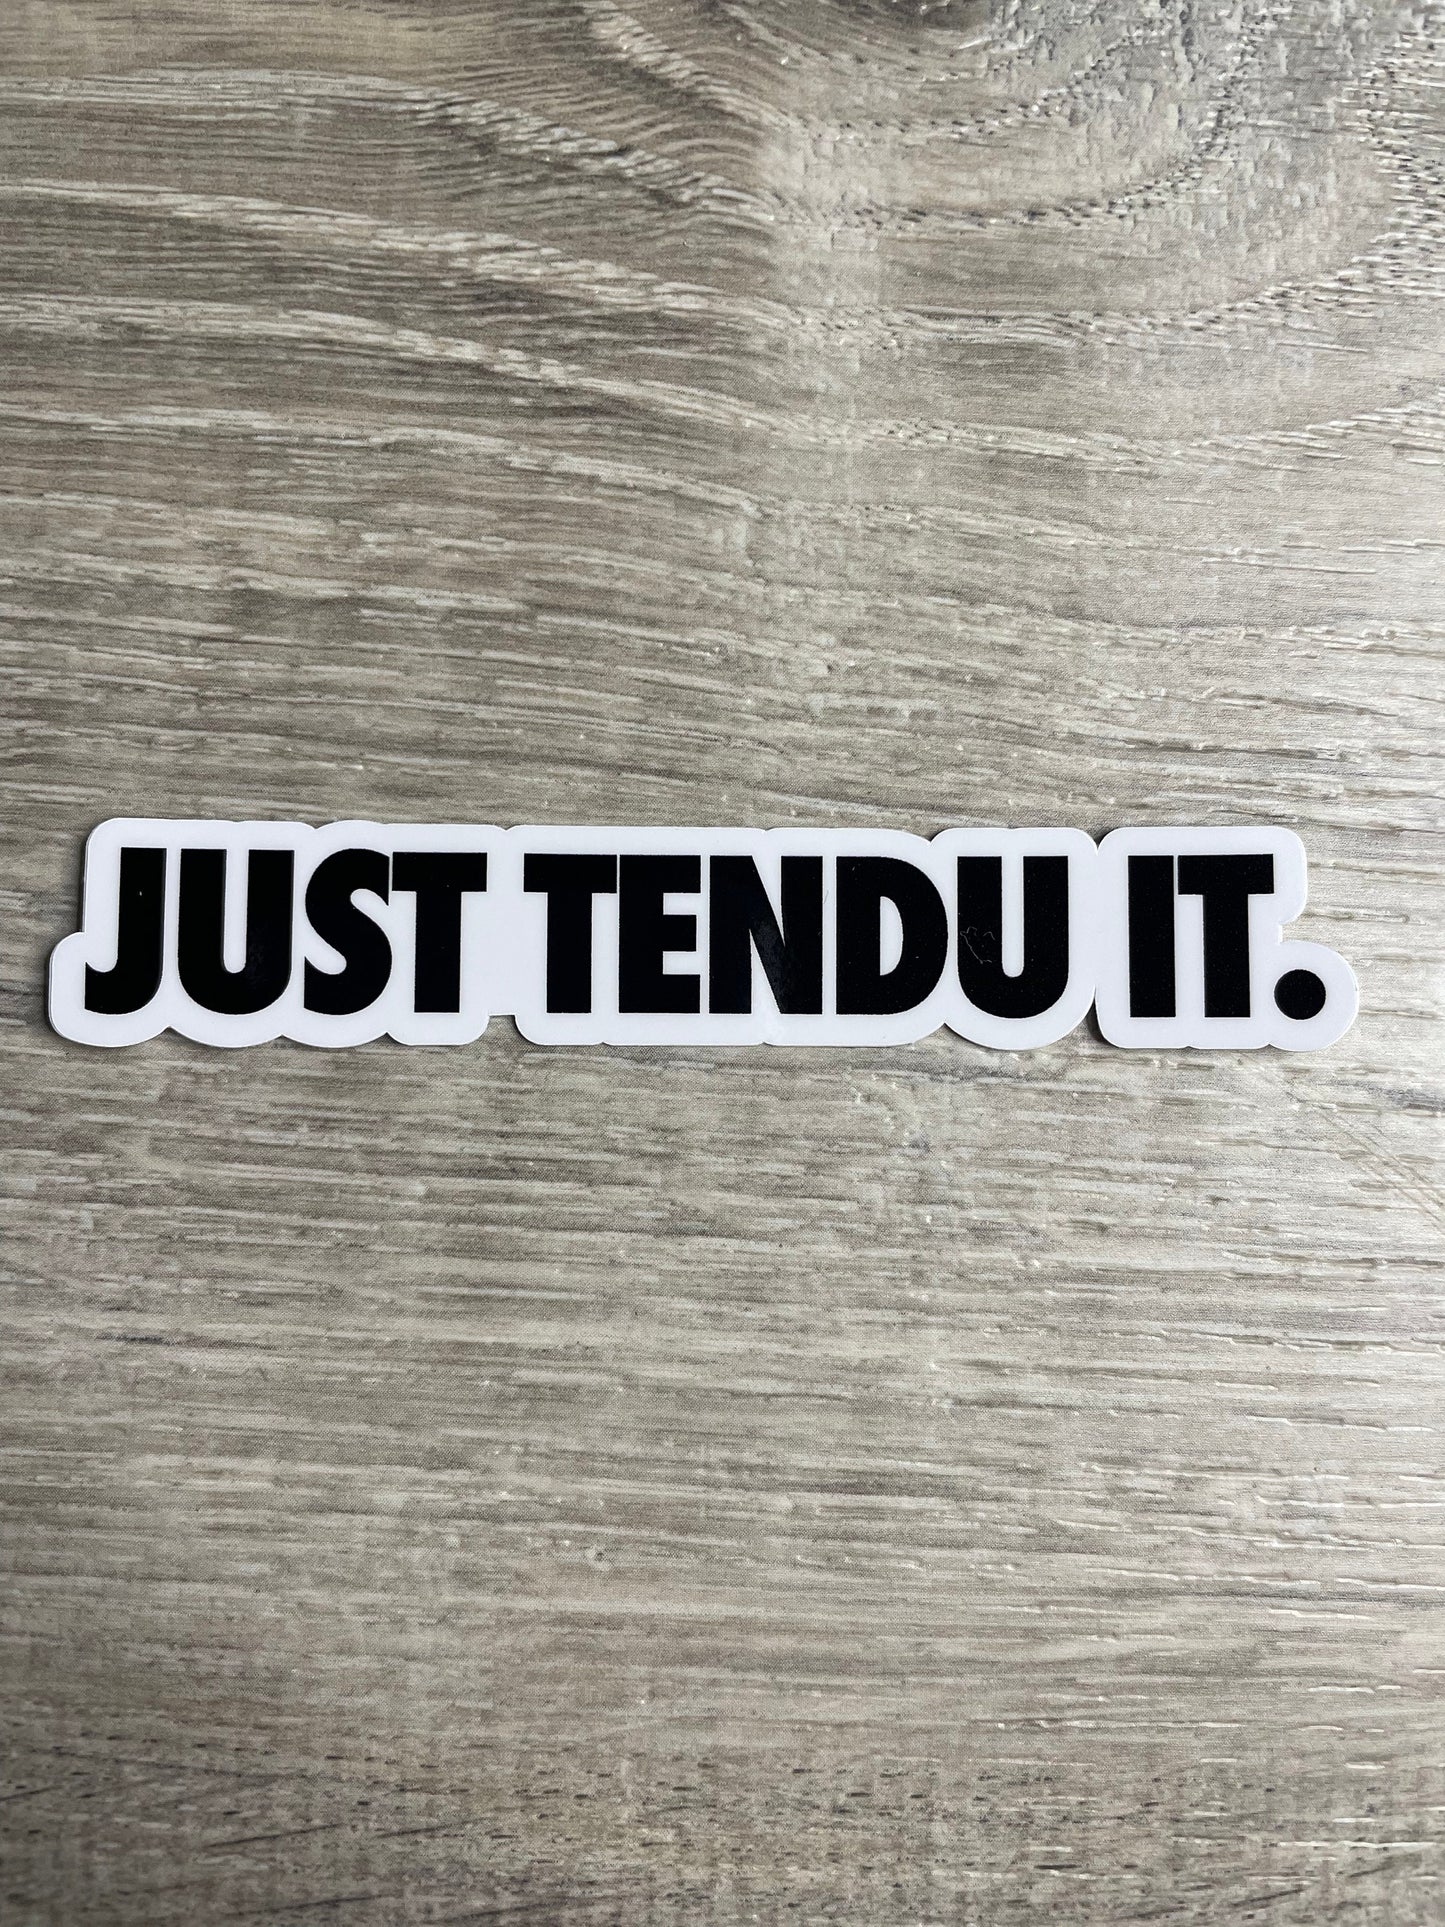 Just Tendu The OG Logo Vinyl Dance Sticker, Vinyl Decal, Laptop Sticker, Dance Sticker, Gifts For Dancers,